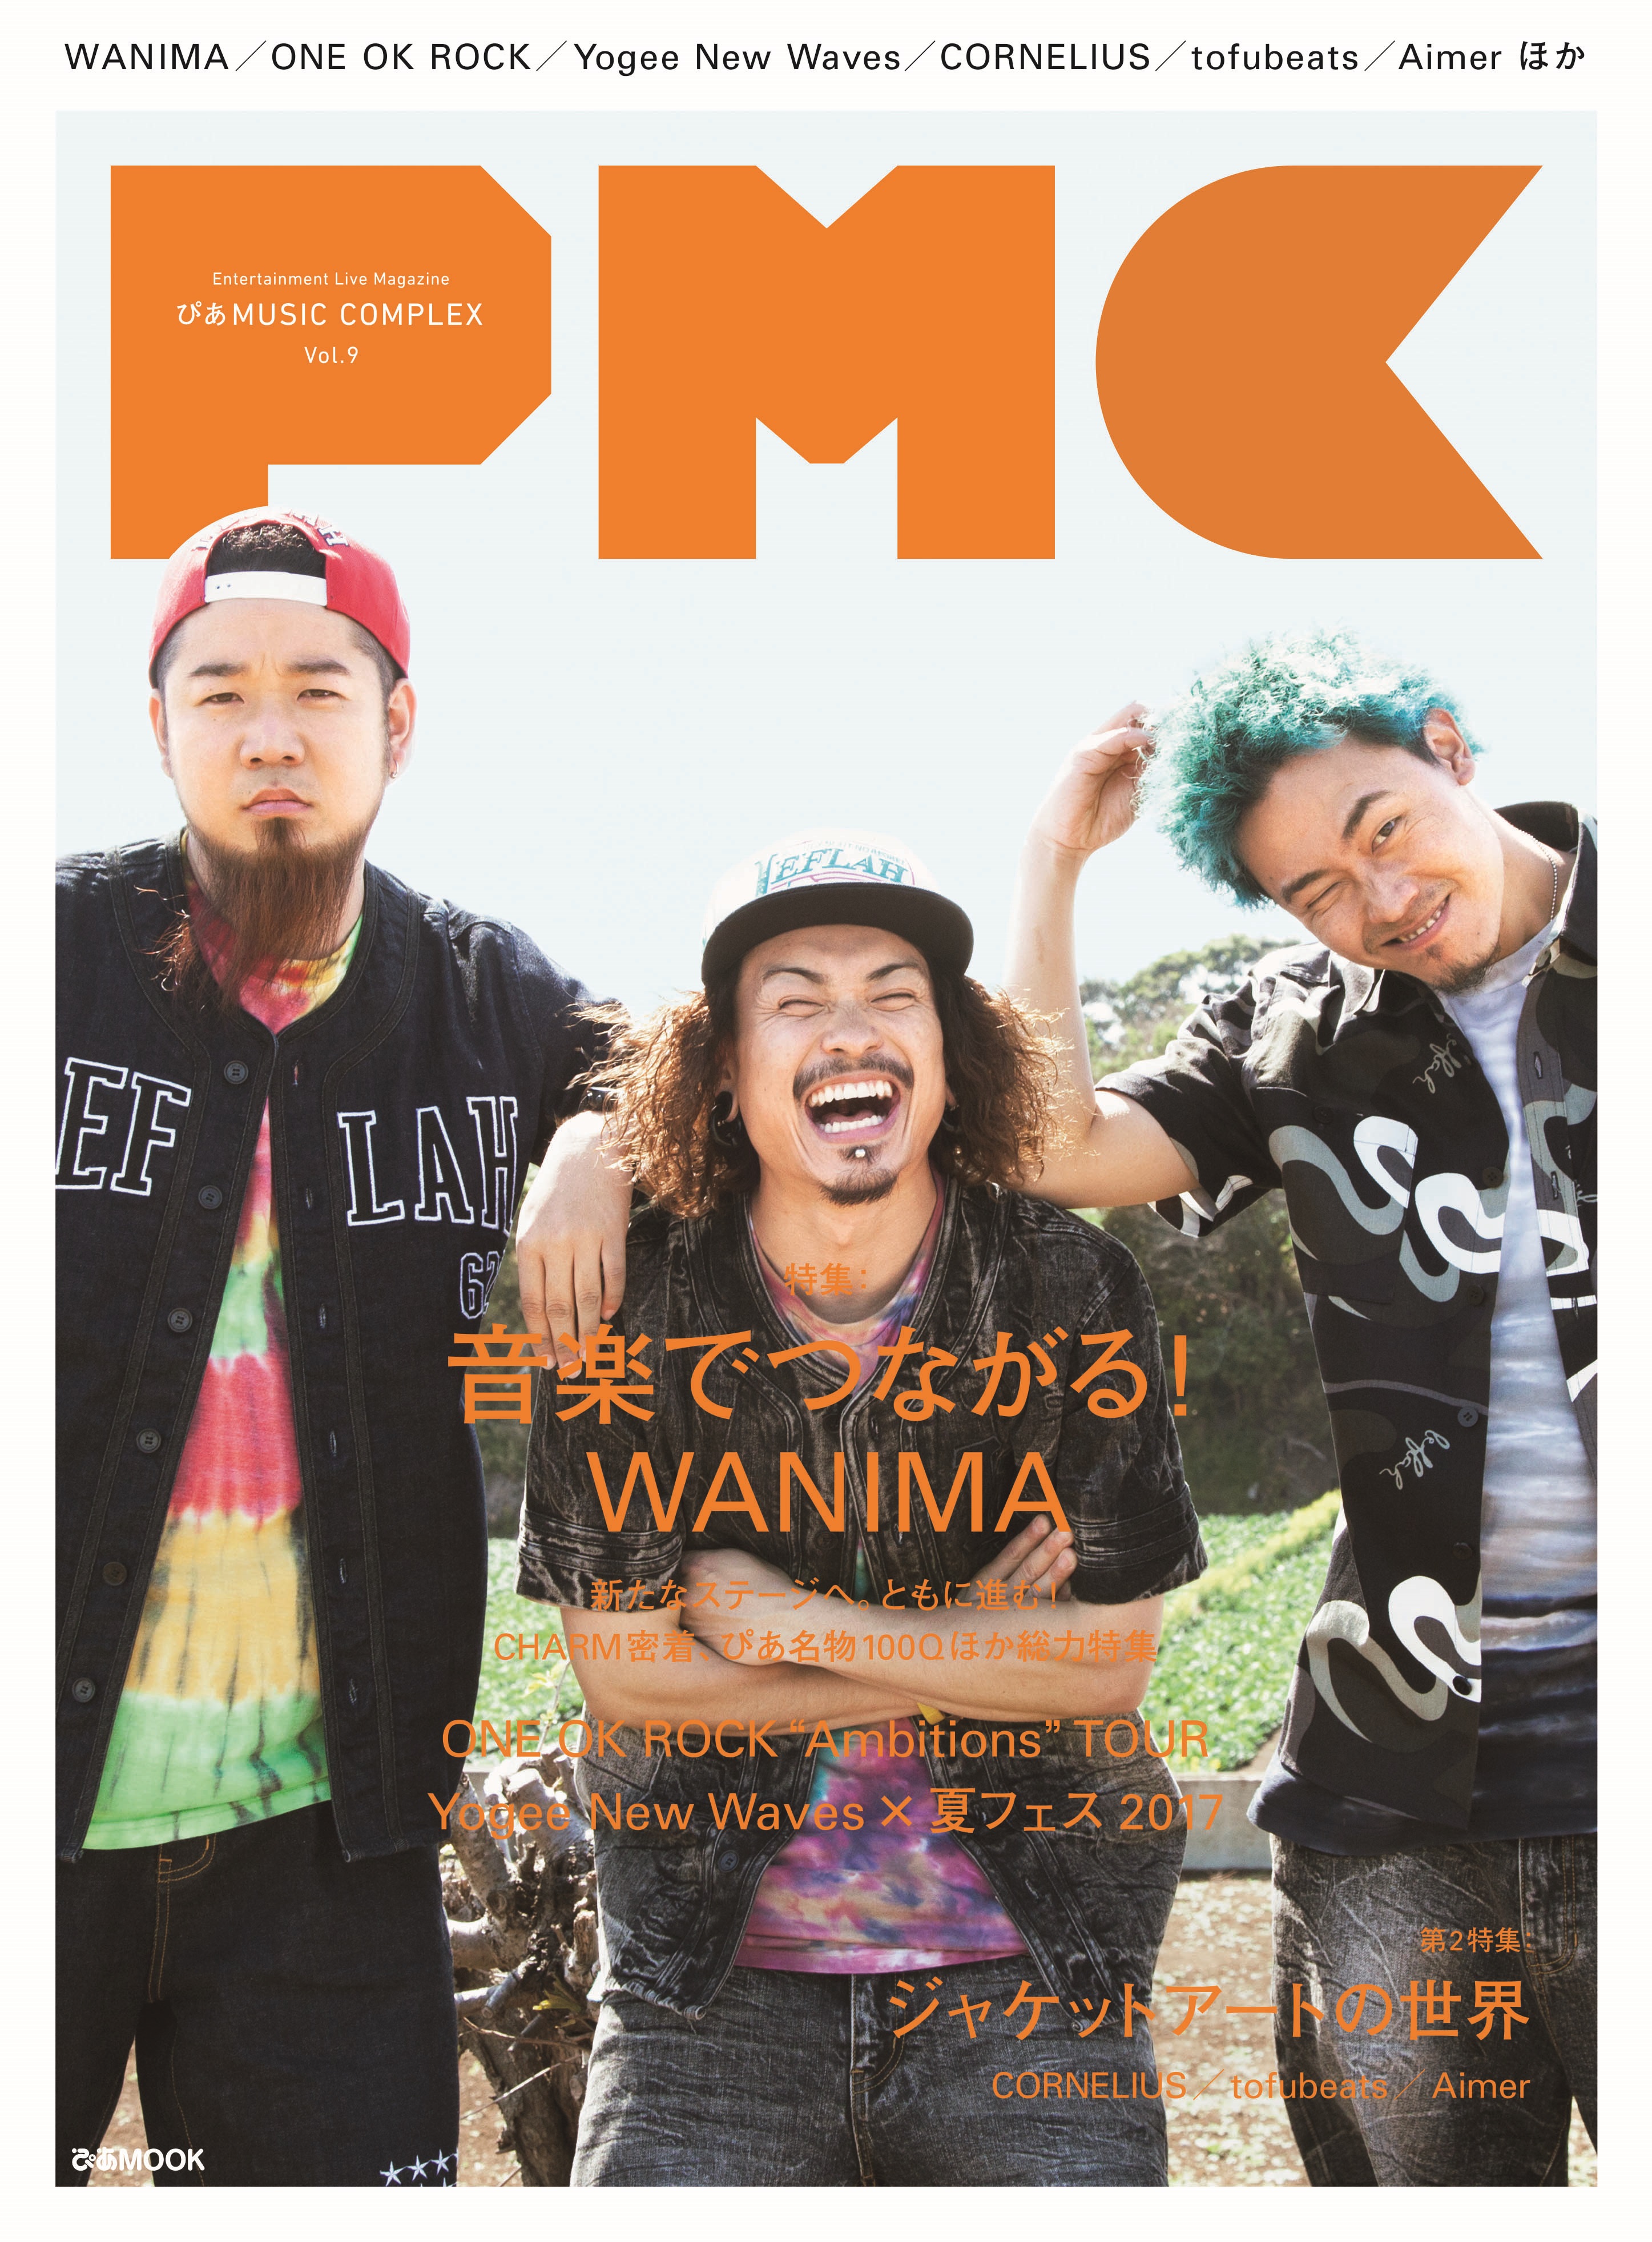 表紙 巻頭はwanima One Ok Rockライブレポも ぴあmusic Complex Pmc Vol 9 5 18発売 ぴあ株式会社のプレスリリース